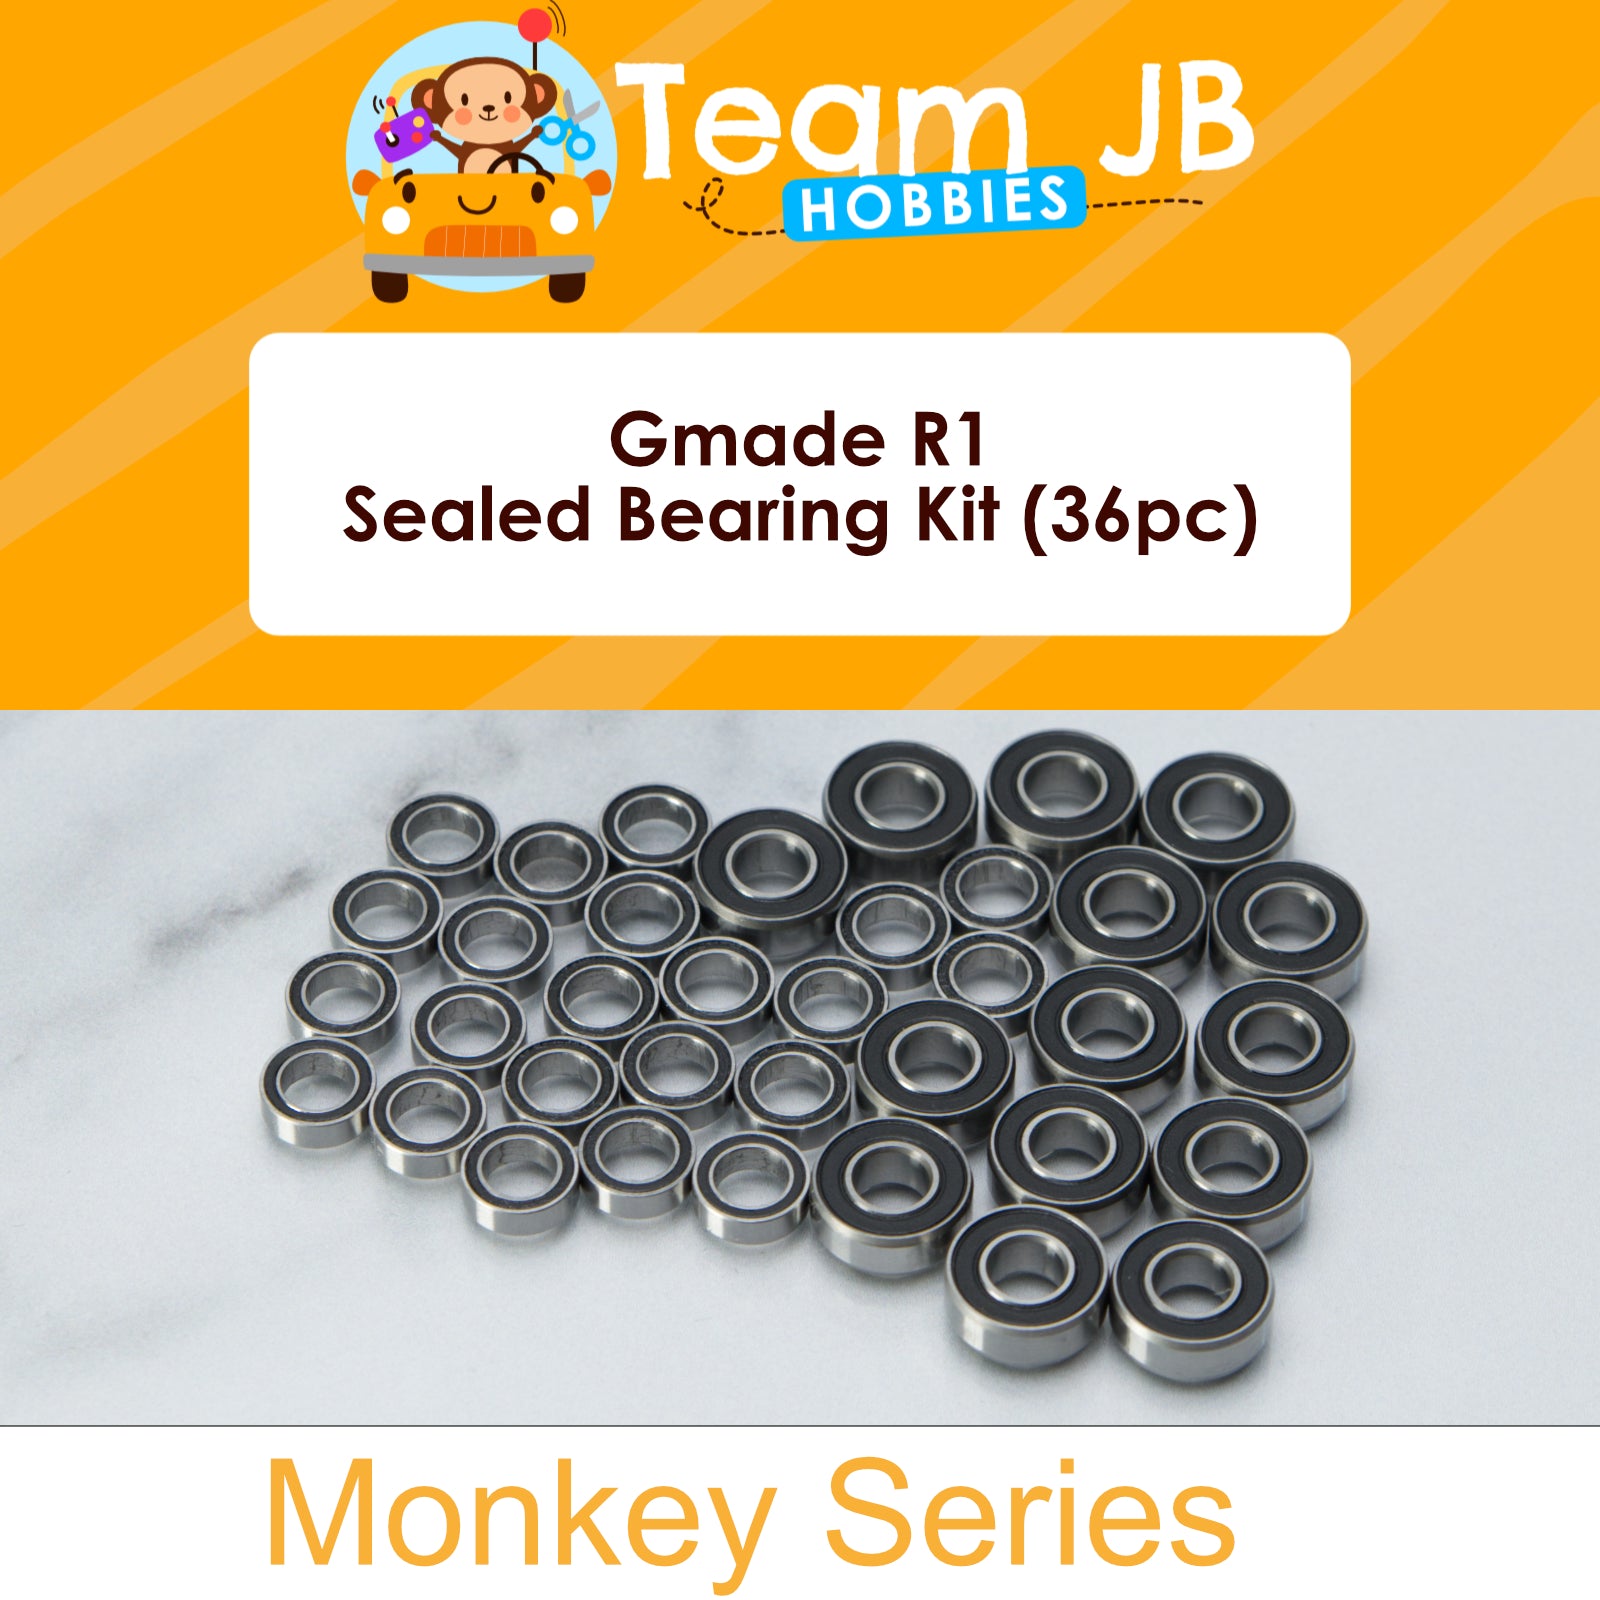 Gmade R1 - Sealed Bearing Kit